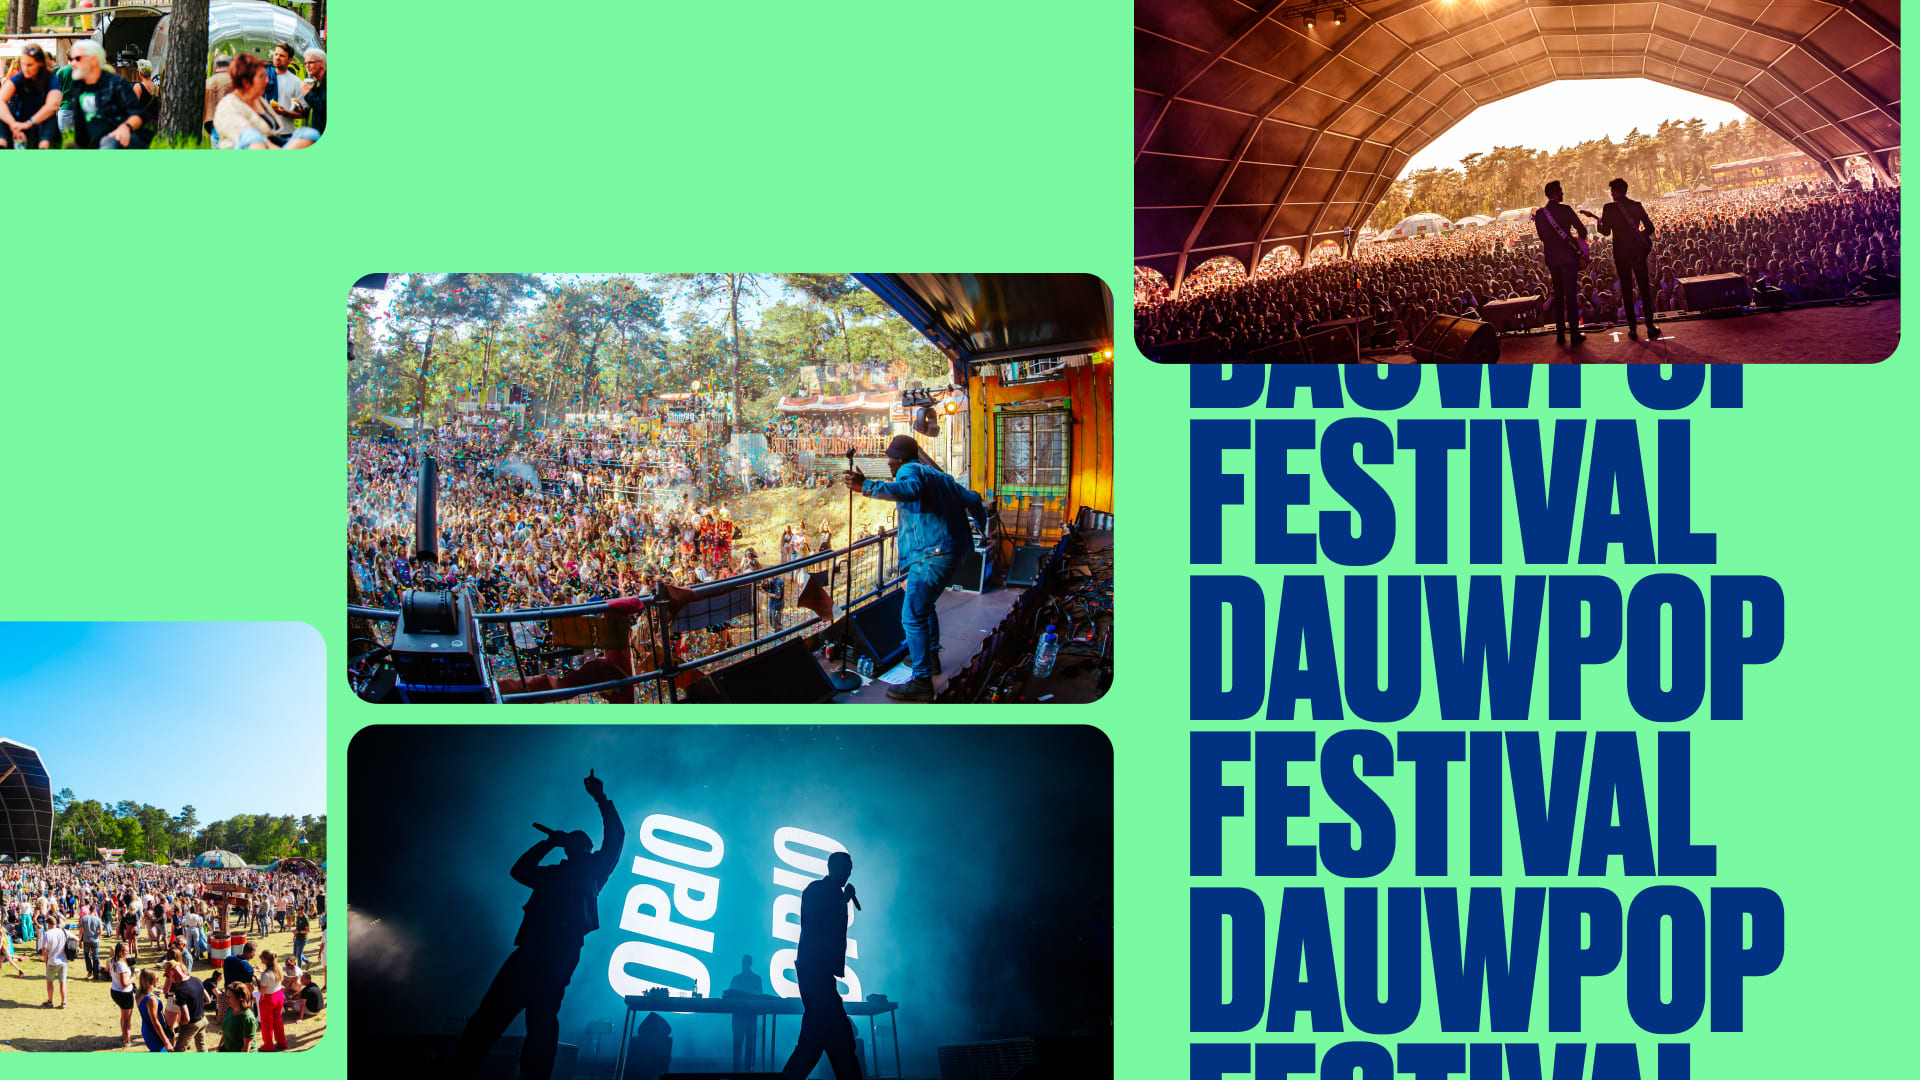 Maak kans op tickets voor Dauwpop Festival!